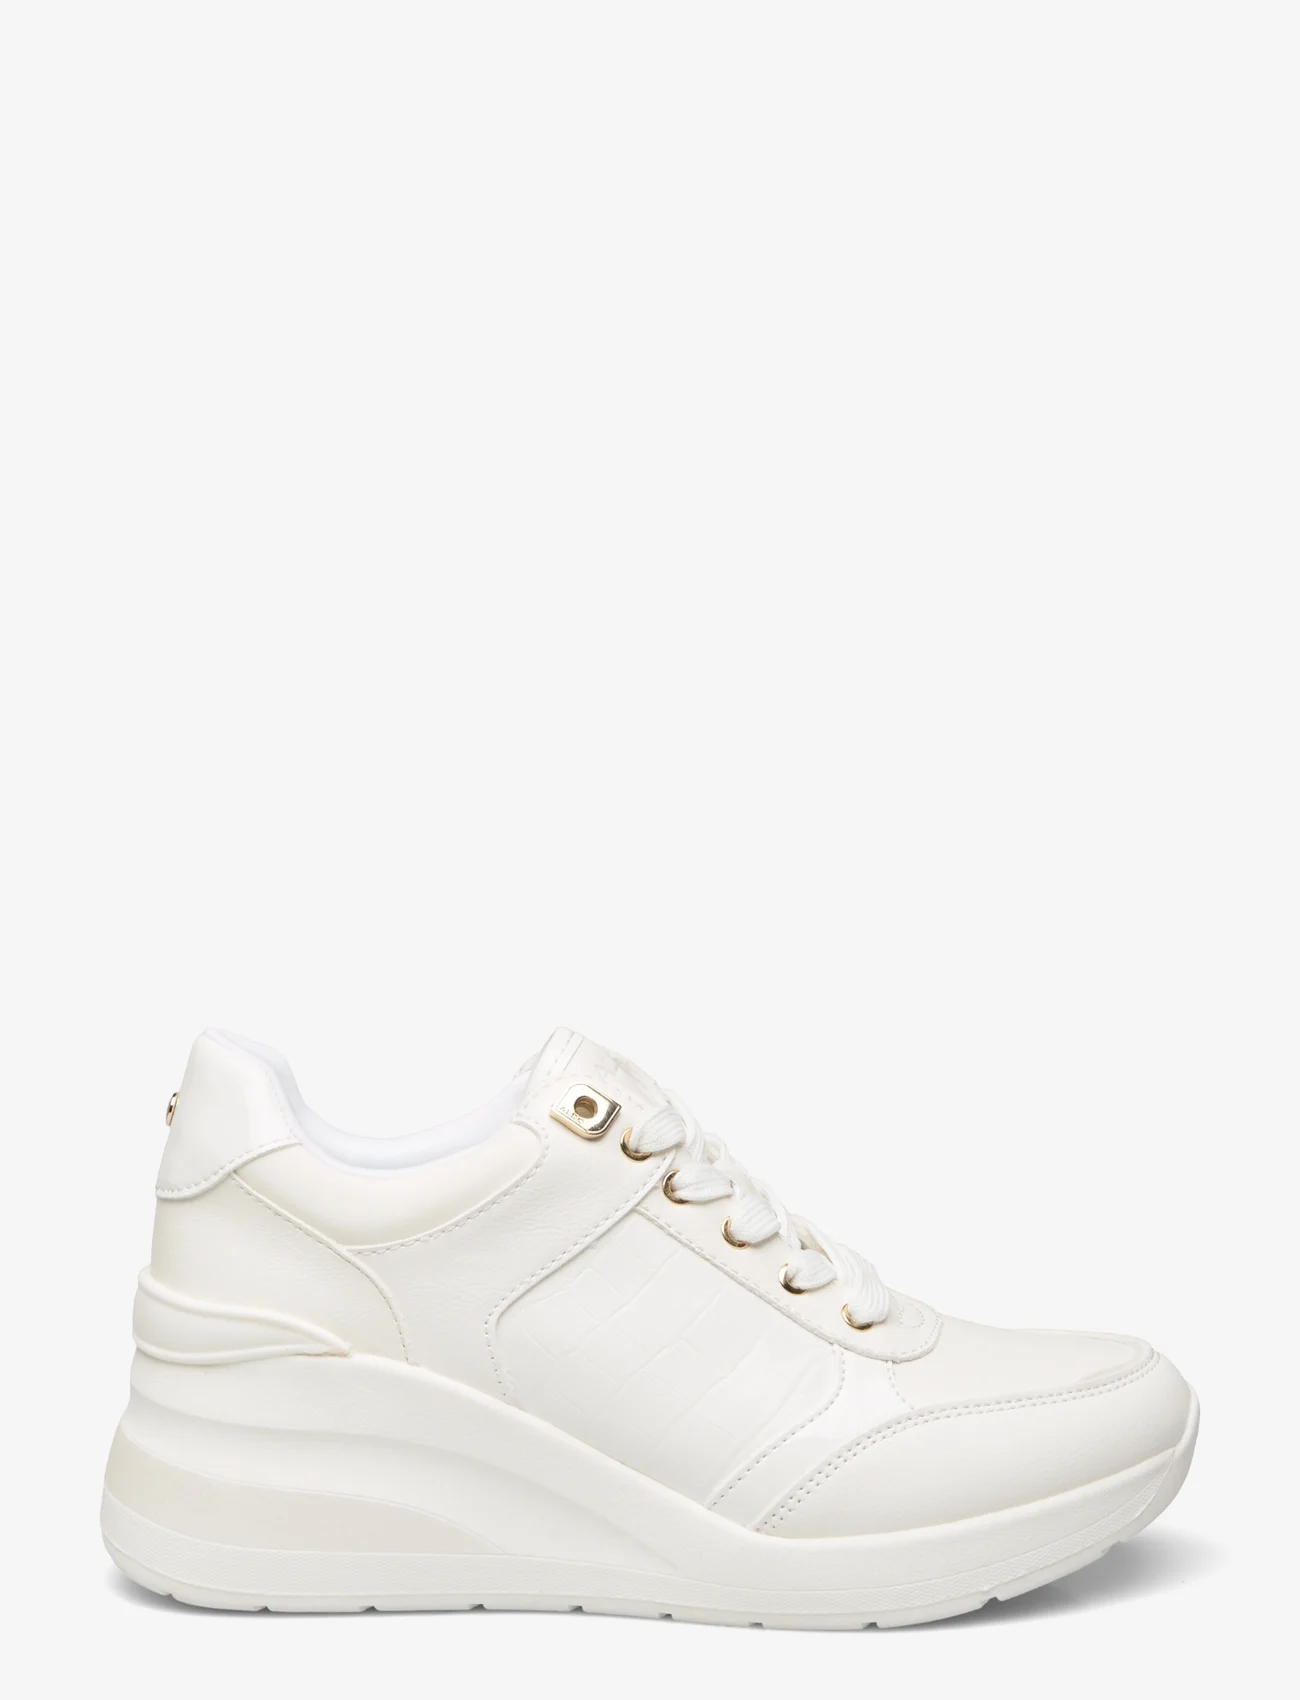 ALDO - ICONISTEP - sneakers med lavt skaft - white overflow - 1